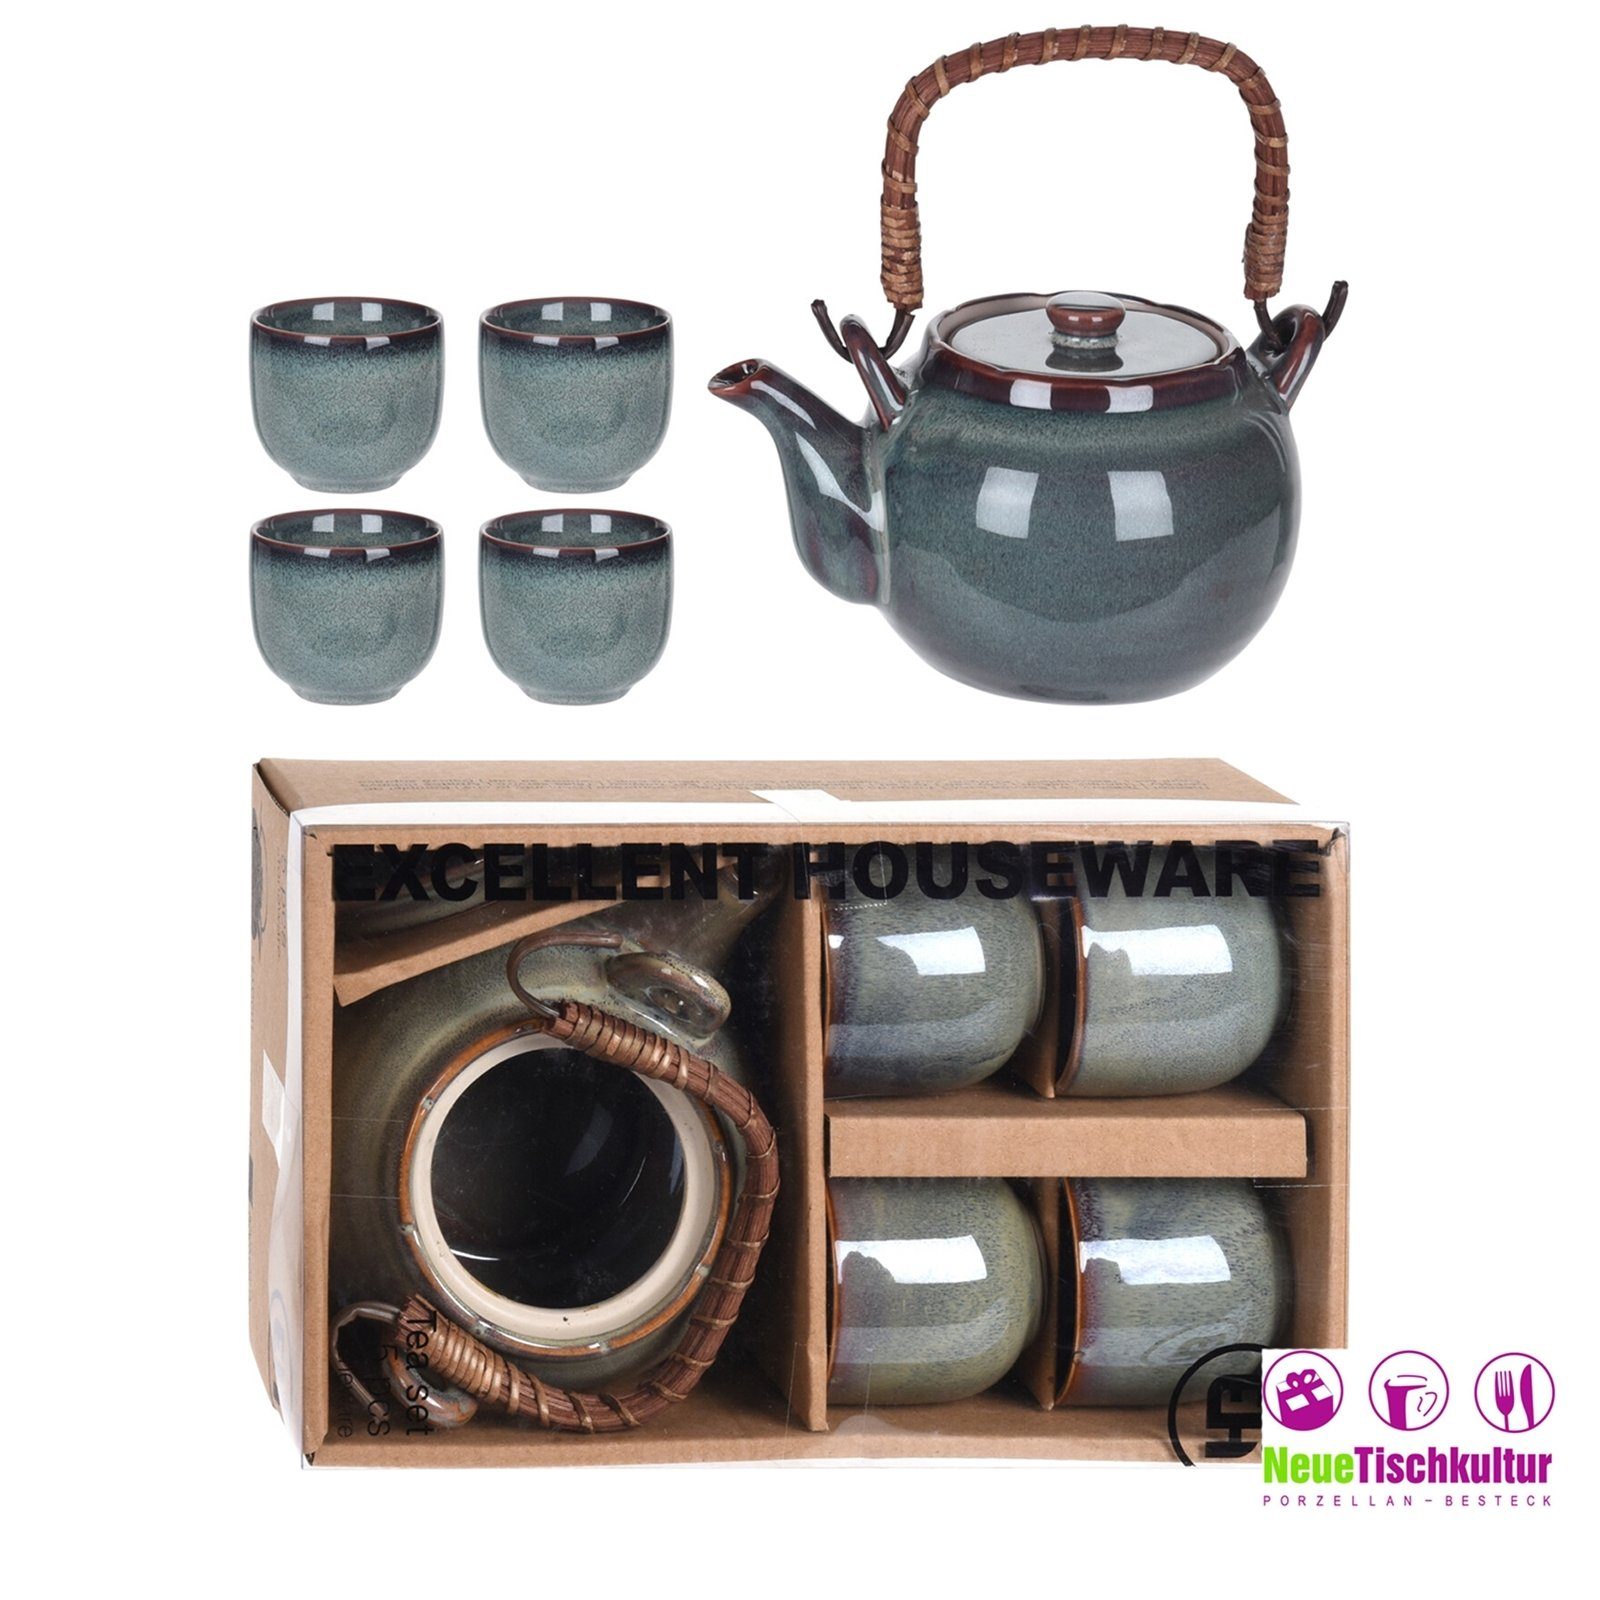 Teekanne 4 mit Keramik Becher Neuetischkultur Teekanne